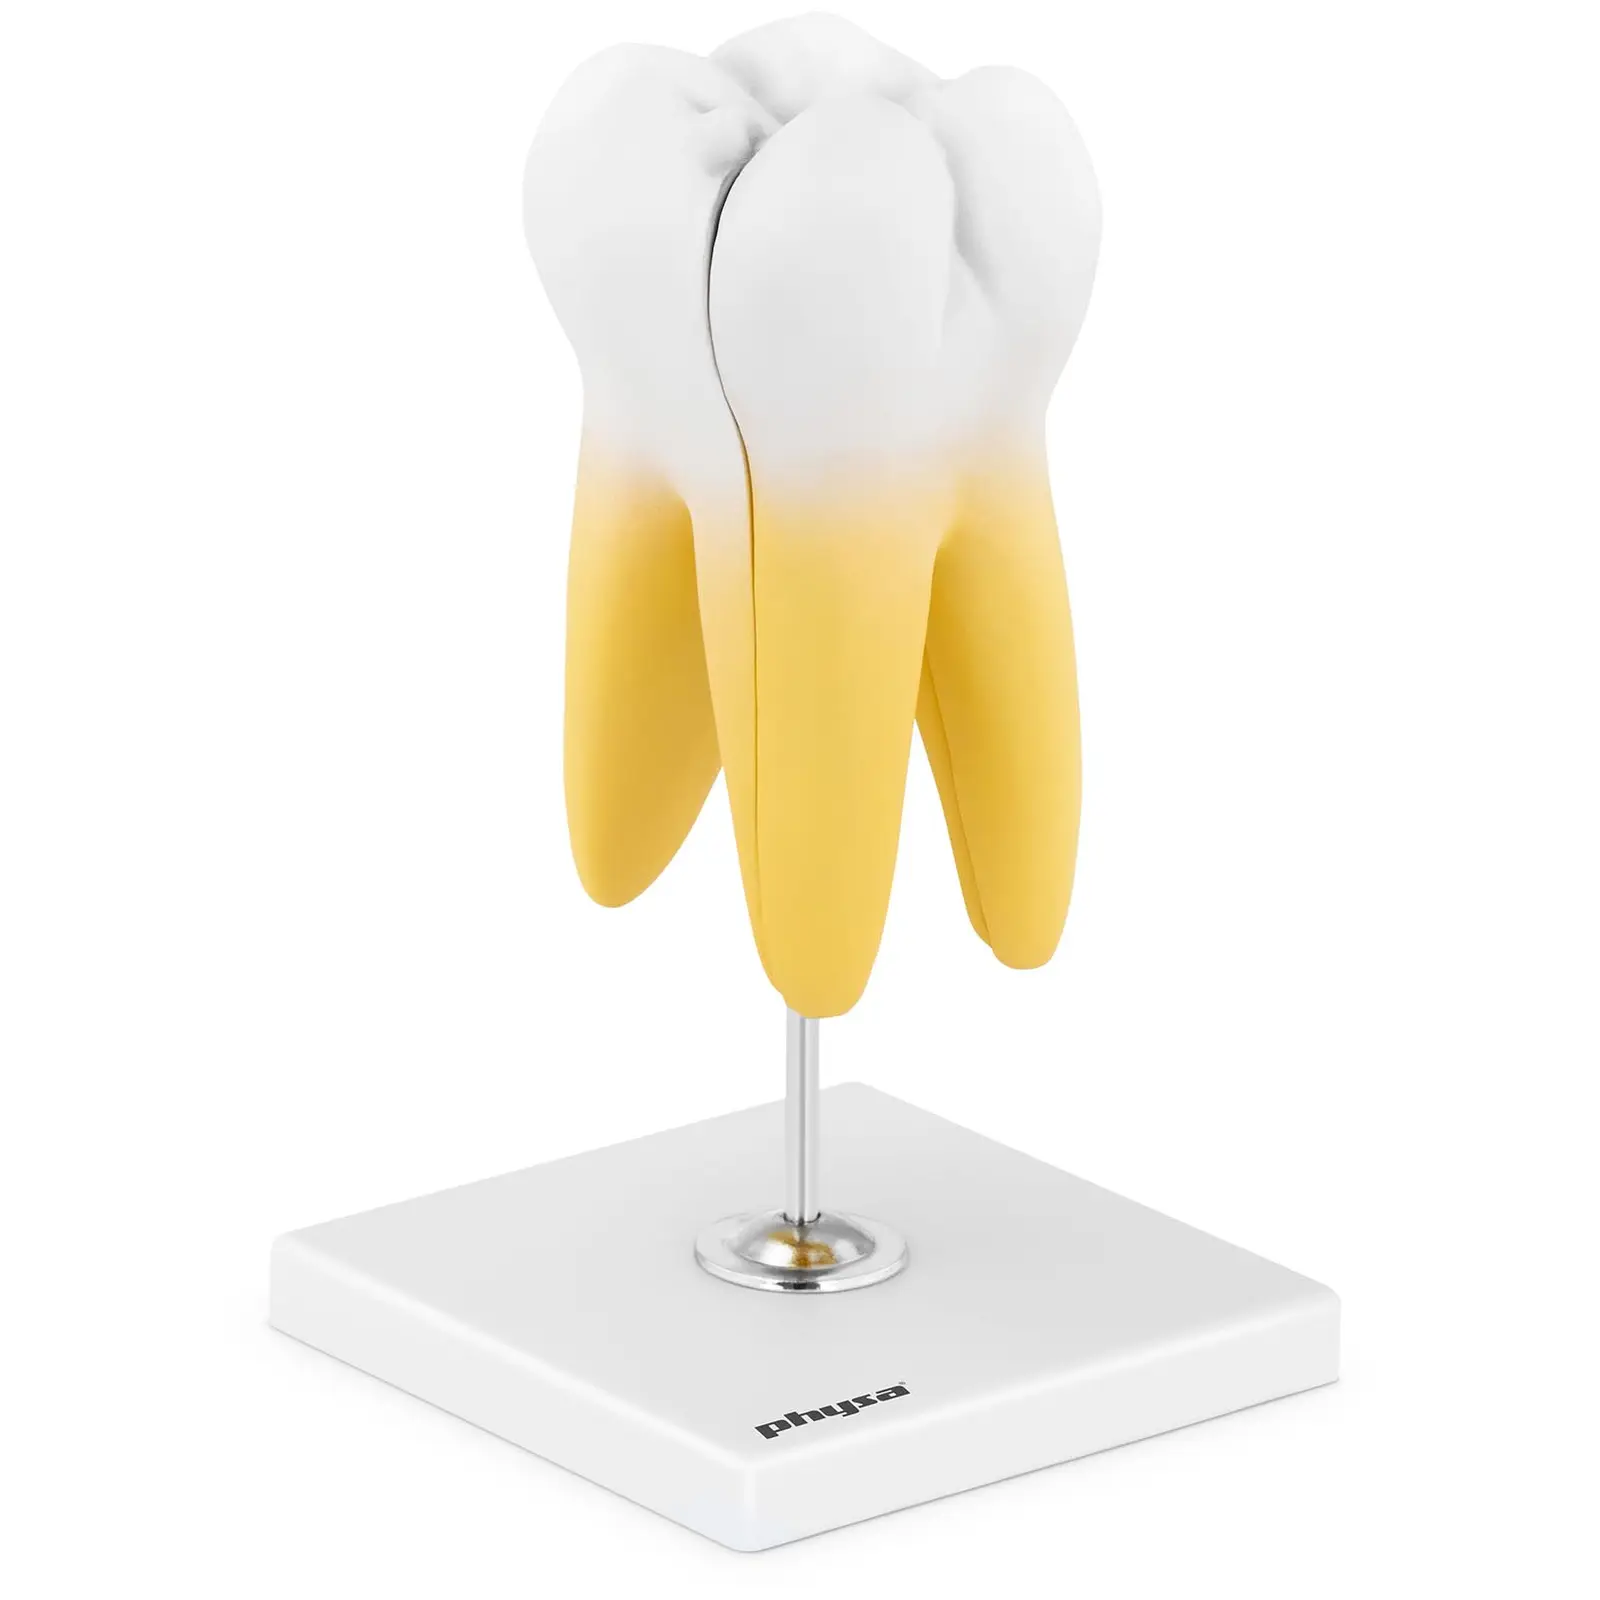 Ząb trzonowy - model anatomiczny